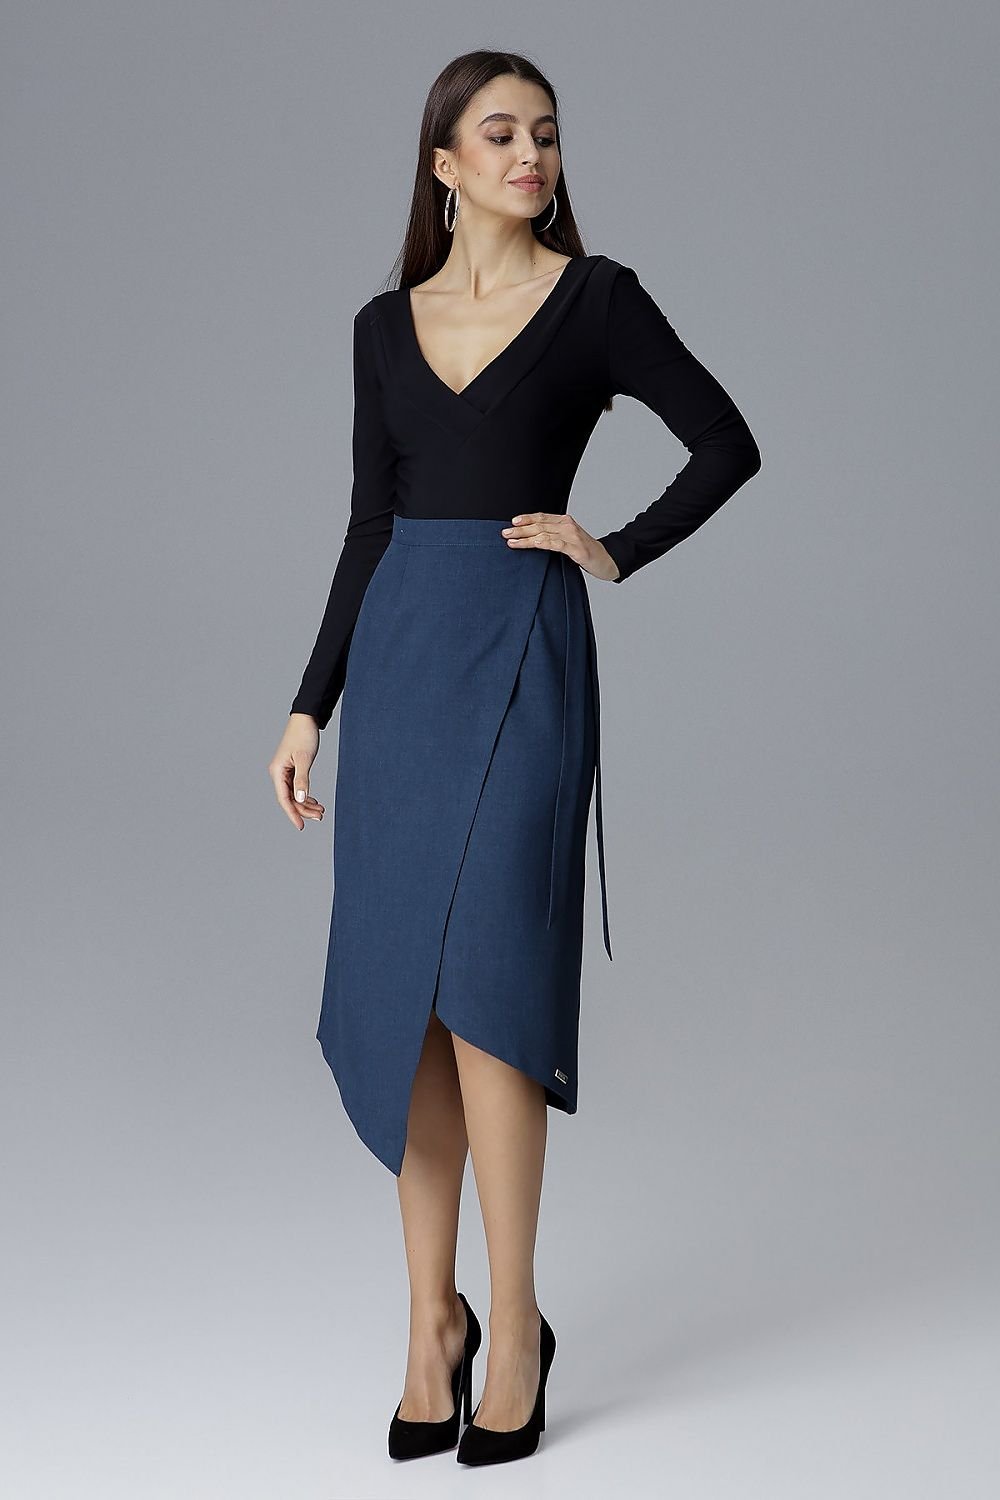 Jupe asymétrique longue bleue élégante pour femme, coupe mi-longue avec un style portefeuille et nouée sur le côté.